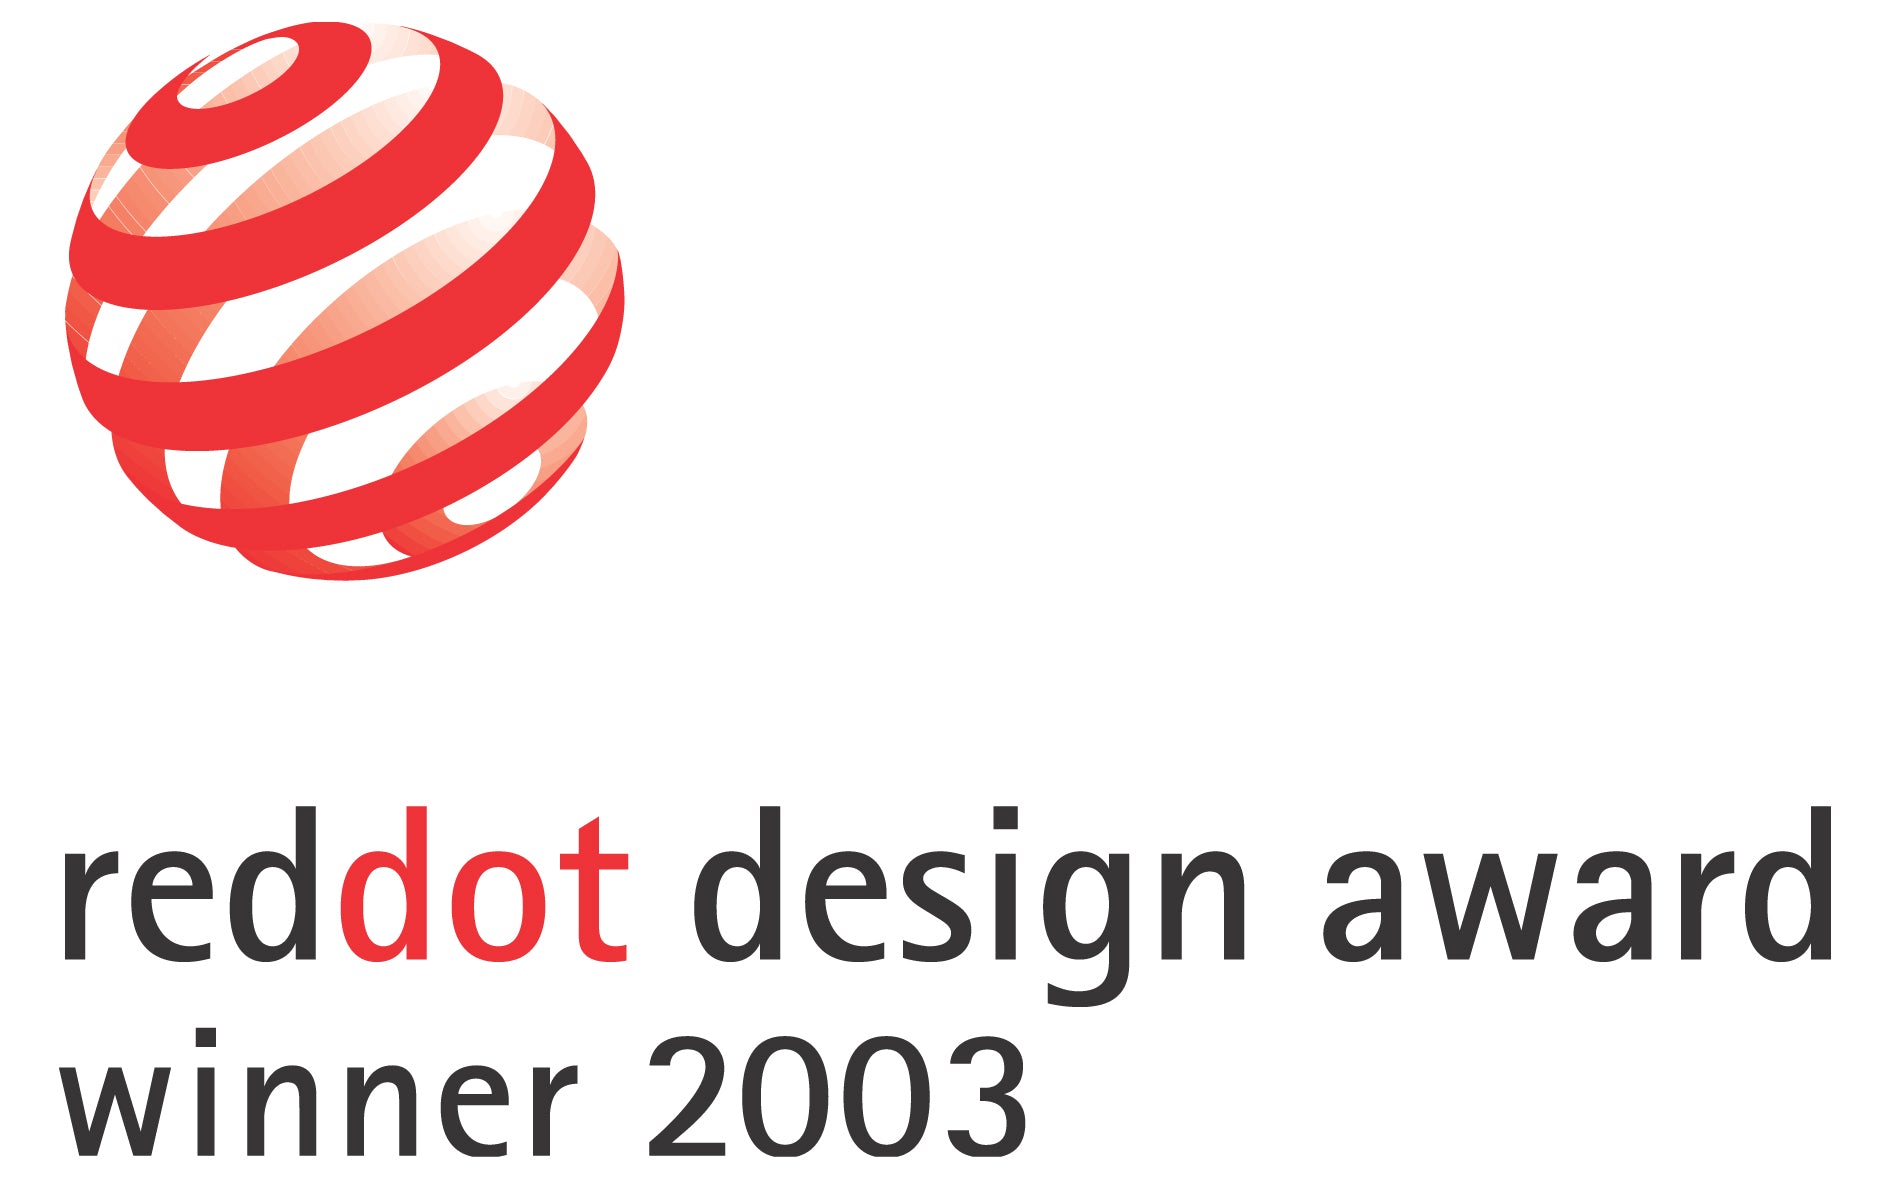 Reddot design award winner 2003